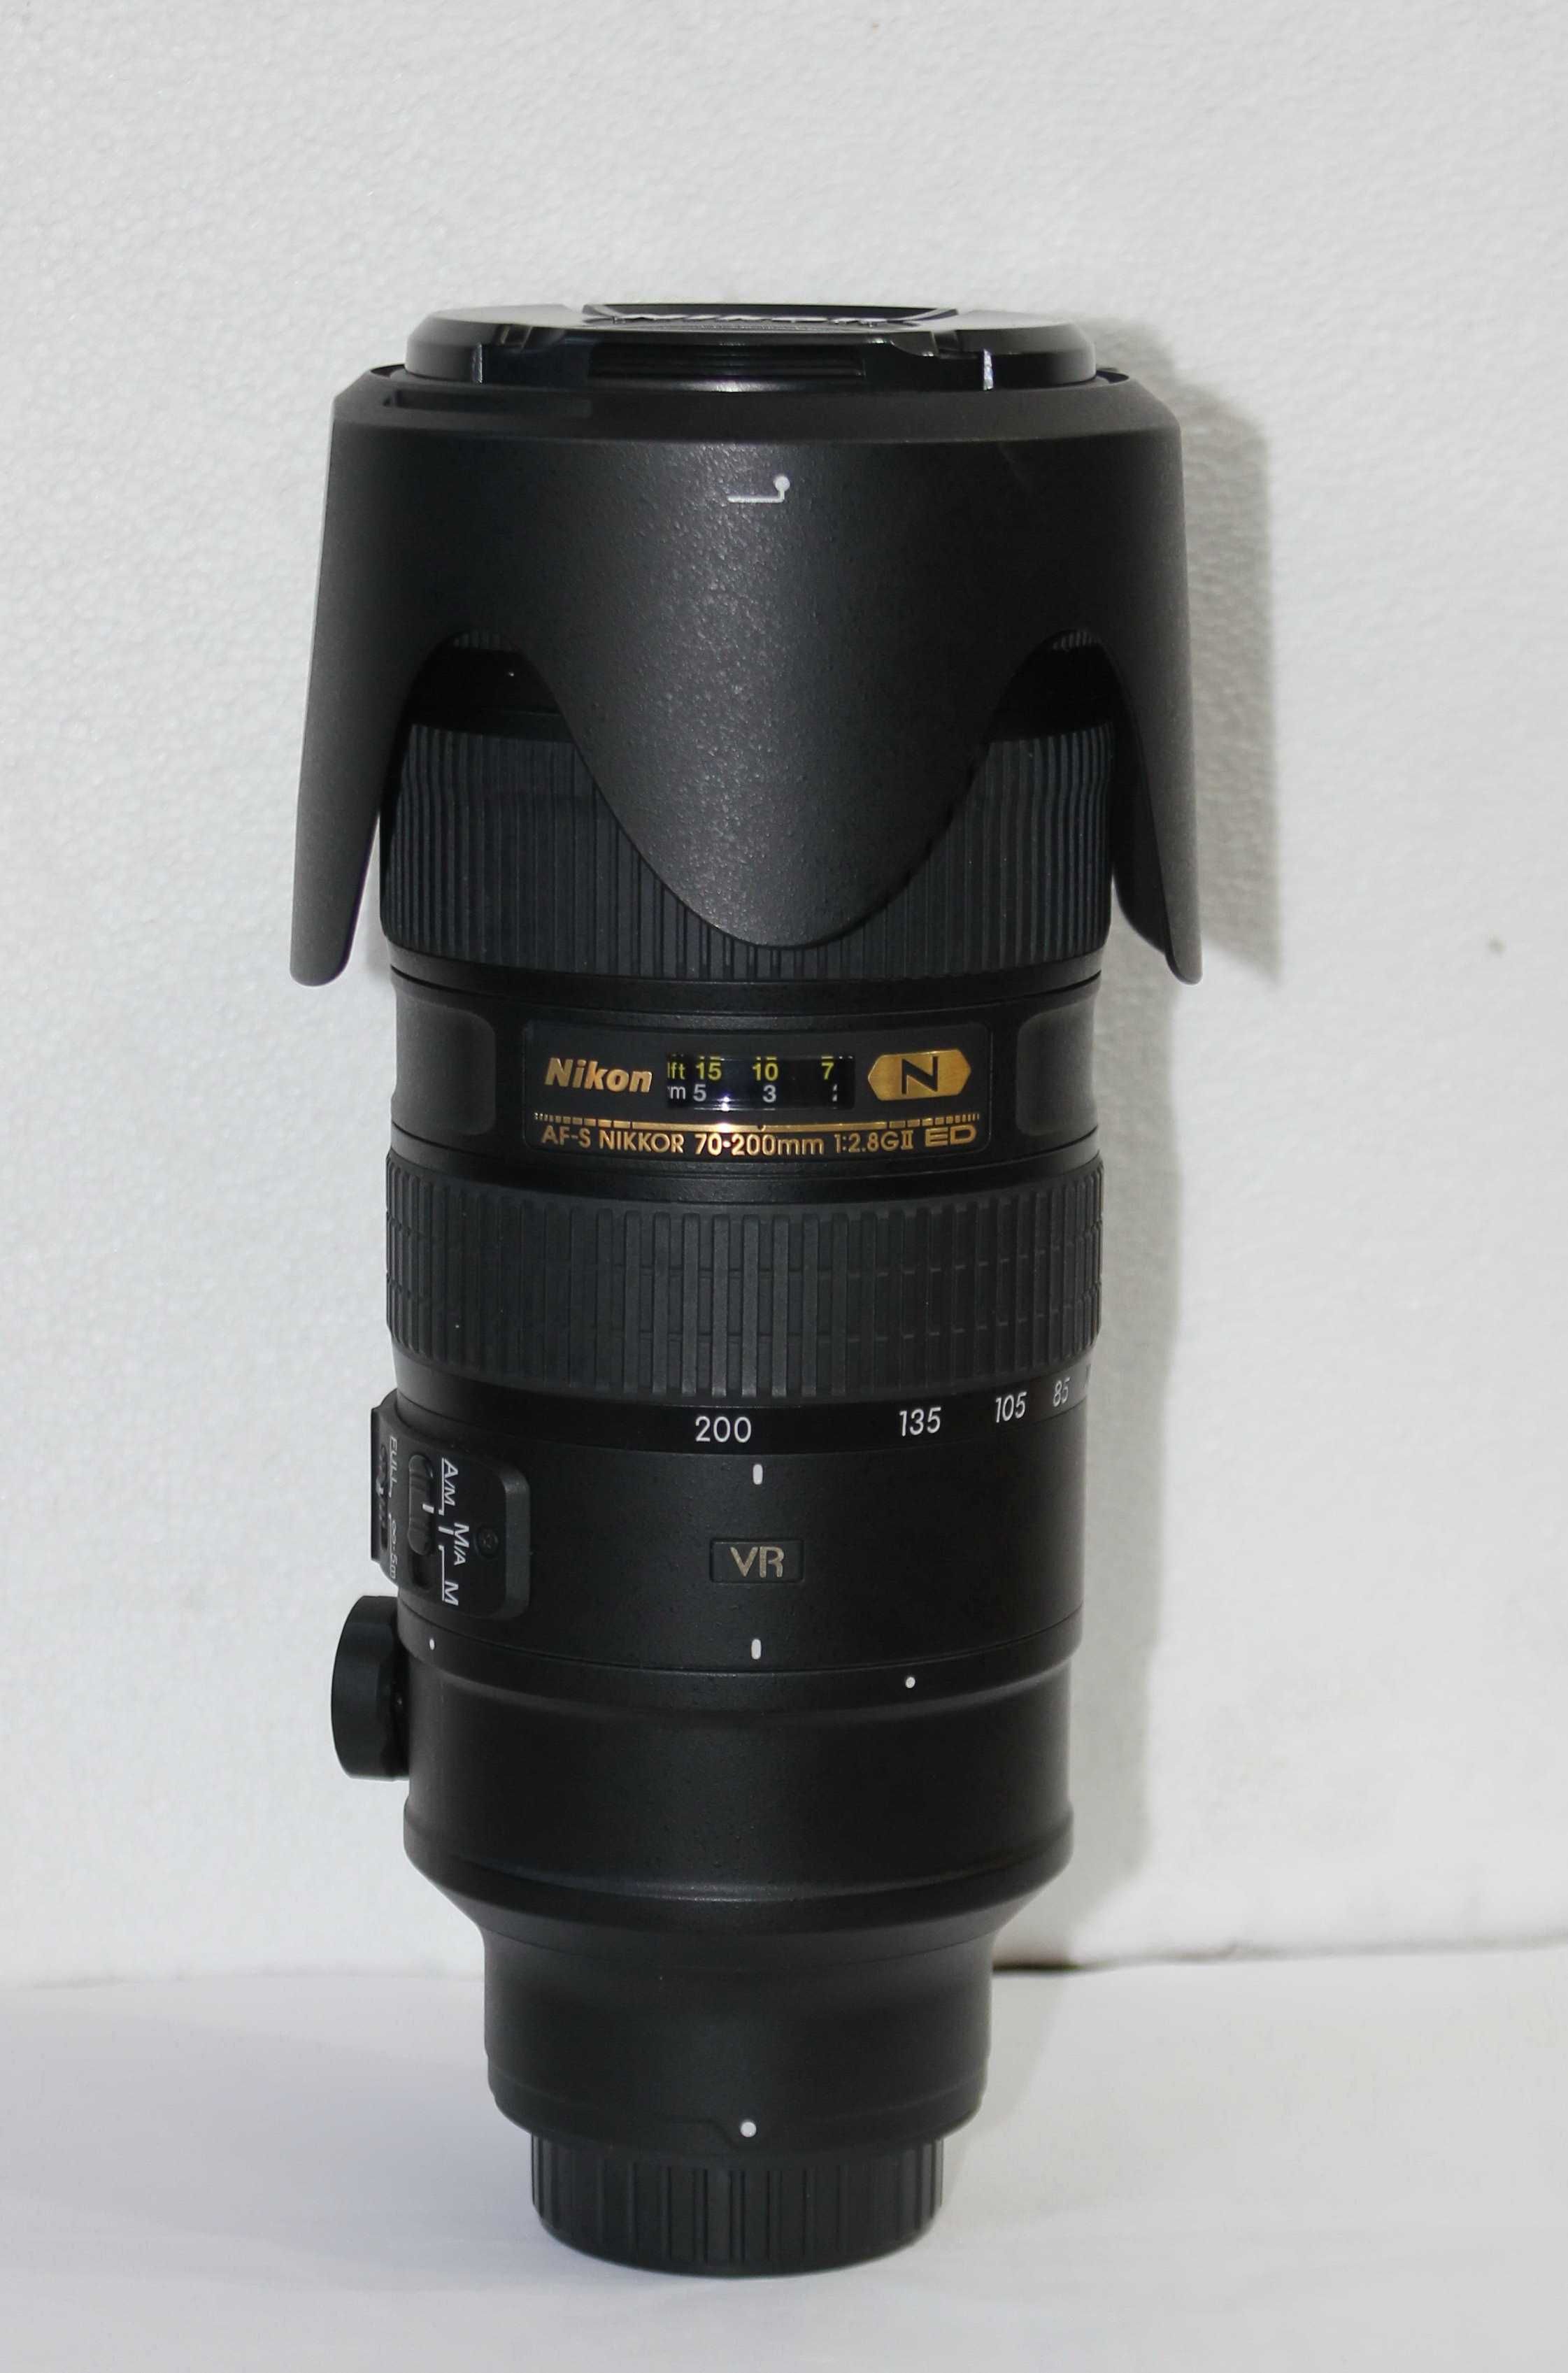 Nikon 70-200mm f/2.8G ED VR II AF-S